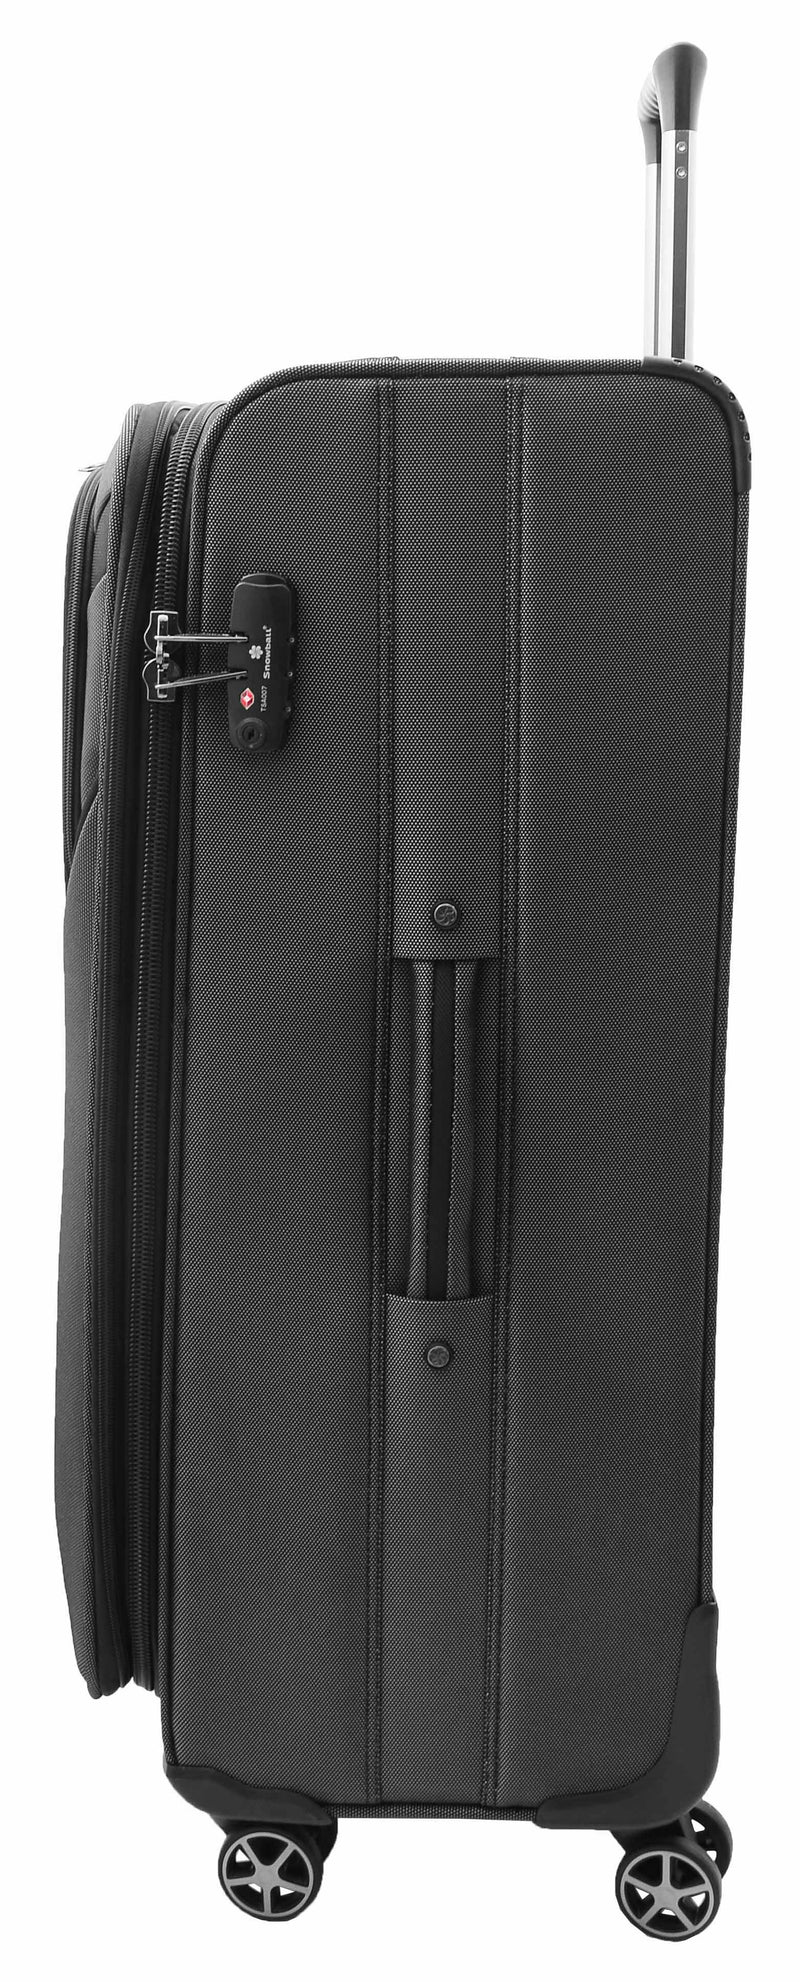 Four Wheel Suitcase Luggage Soft Casing TSA Lock Neptune Black 3